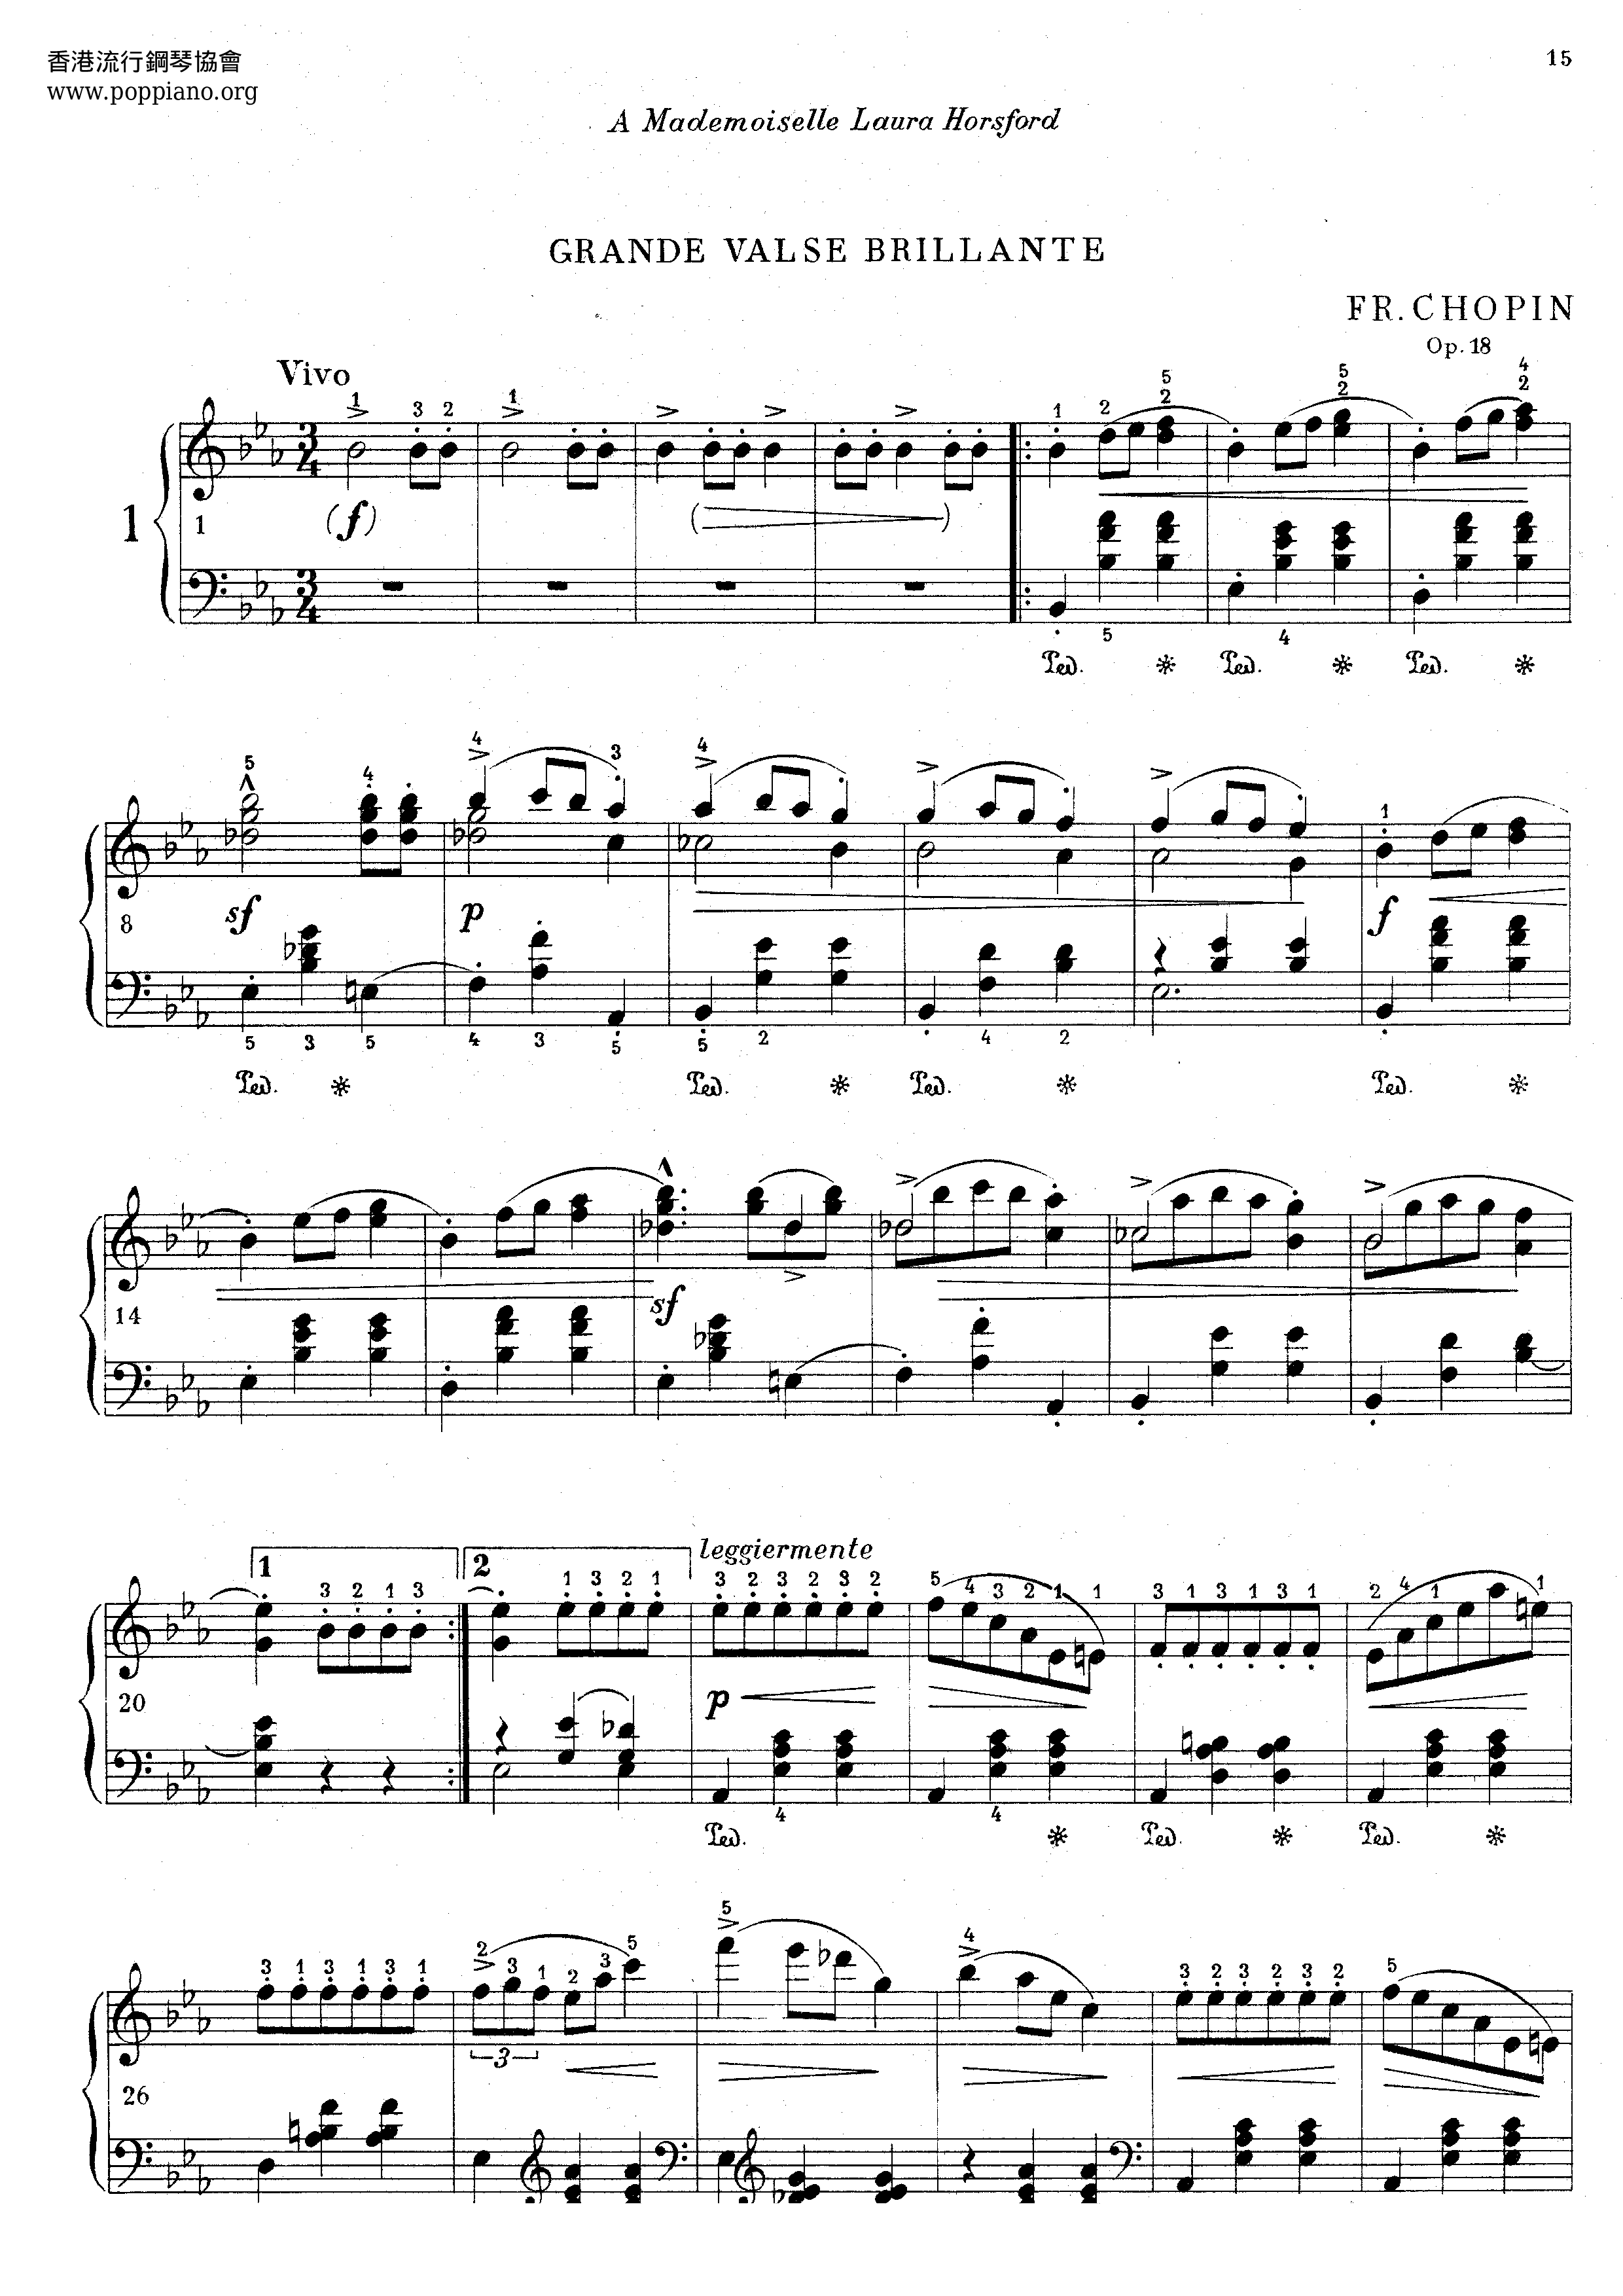 Op. 18, Grande Waltz Brillante Score